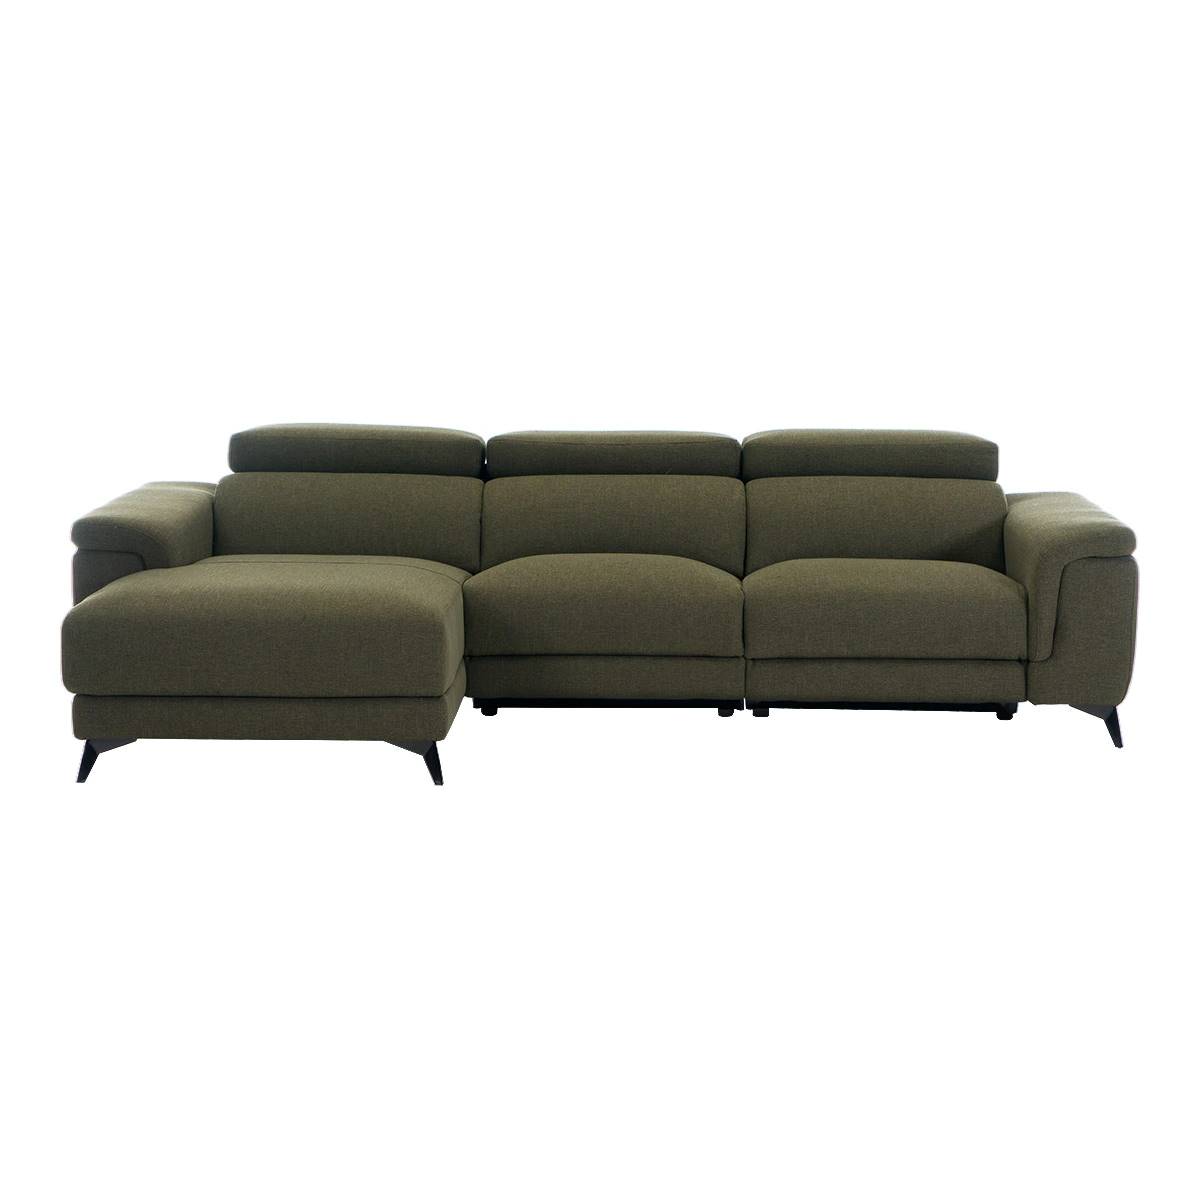 sofa chaise logue savannah 00112800913878 eci